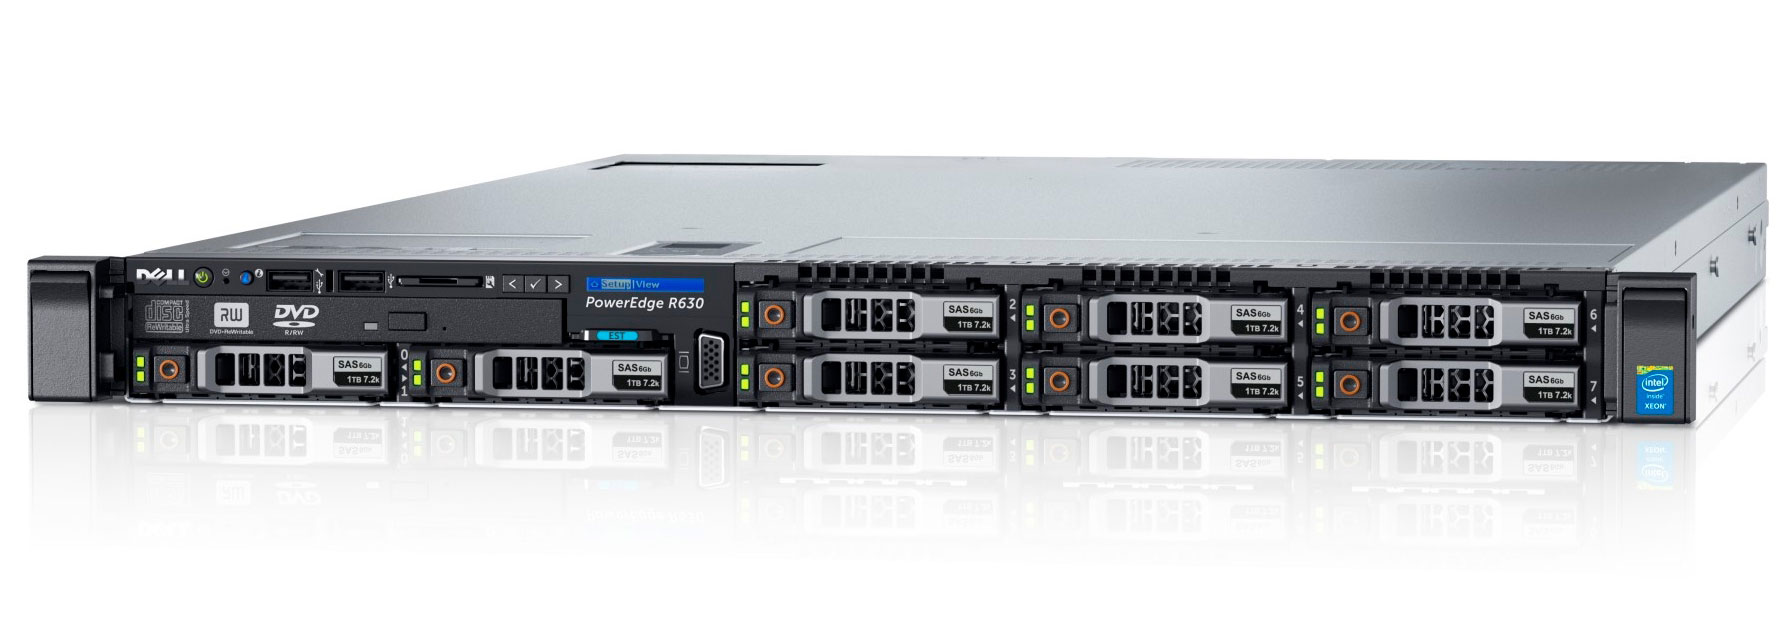 Подробное фото Сервер DELL PowerEdge R630 2x Xeon E5-2699v3 128Gb 2133P DDR4 8x noHDD 2.5" SAS RAID Perc H730, 1024Mb, 2*PSU